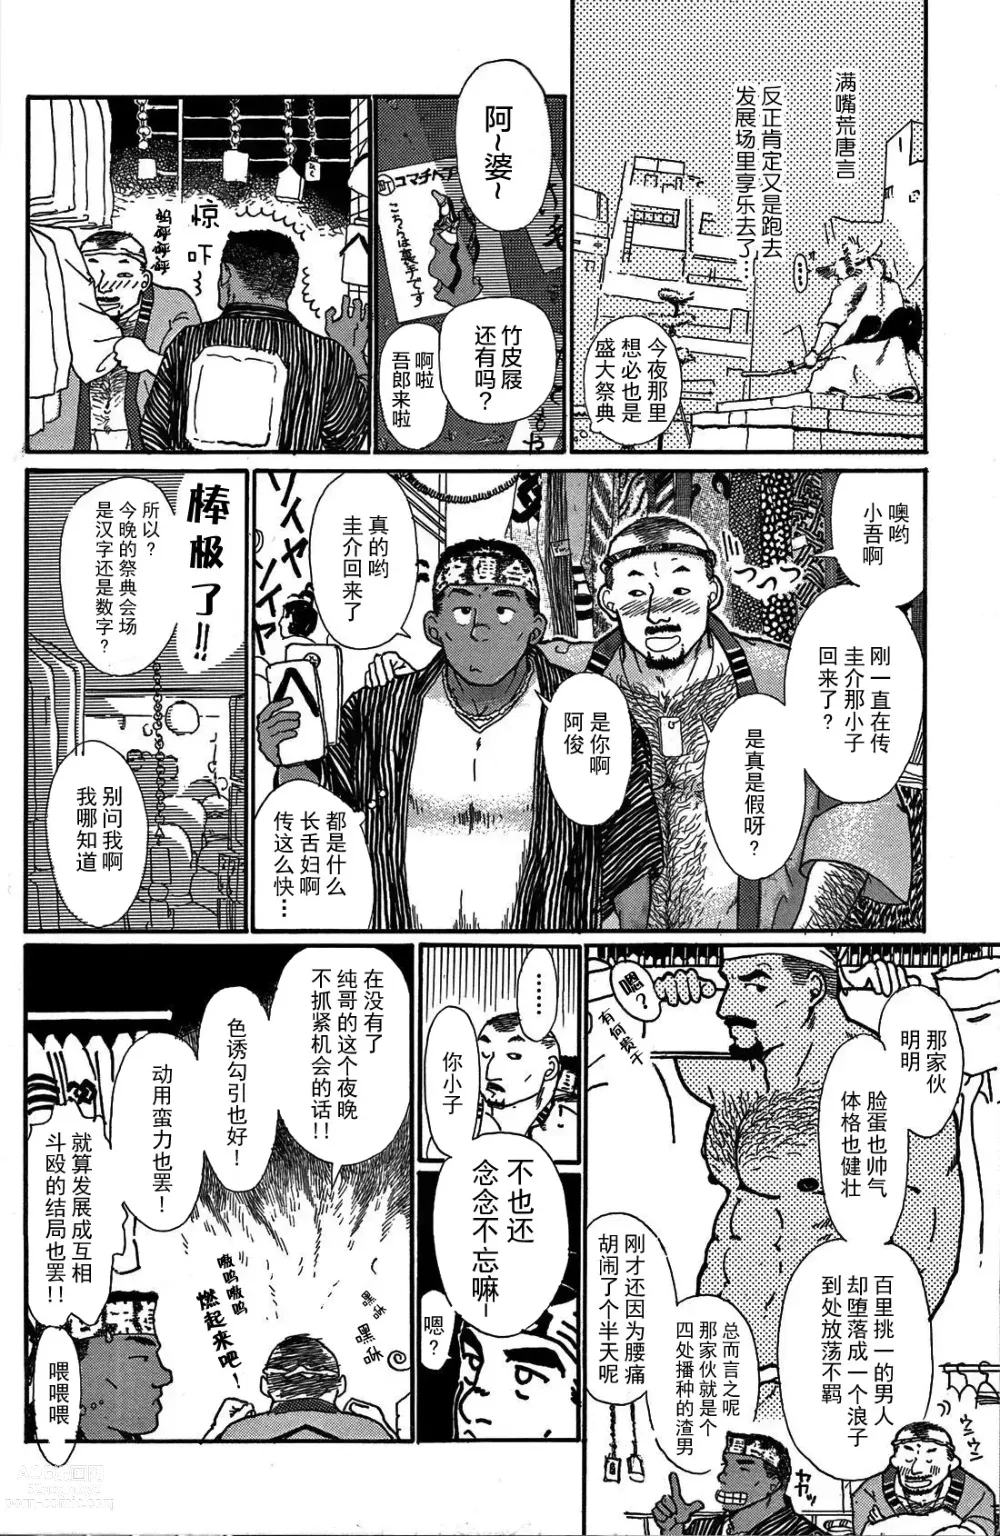 Page 9 of manga 纯情!! 第一章 「纯情」